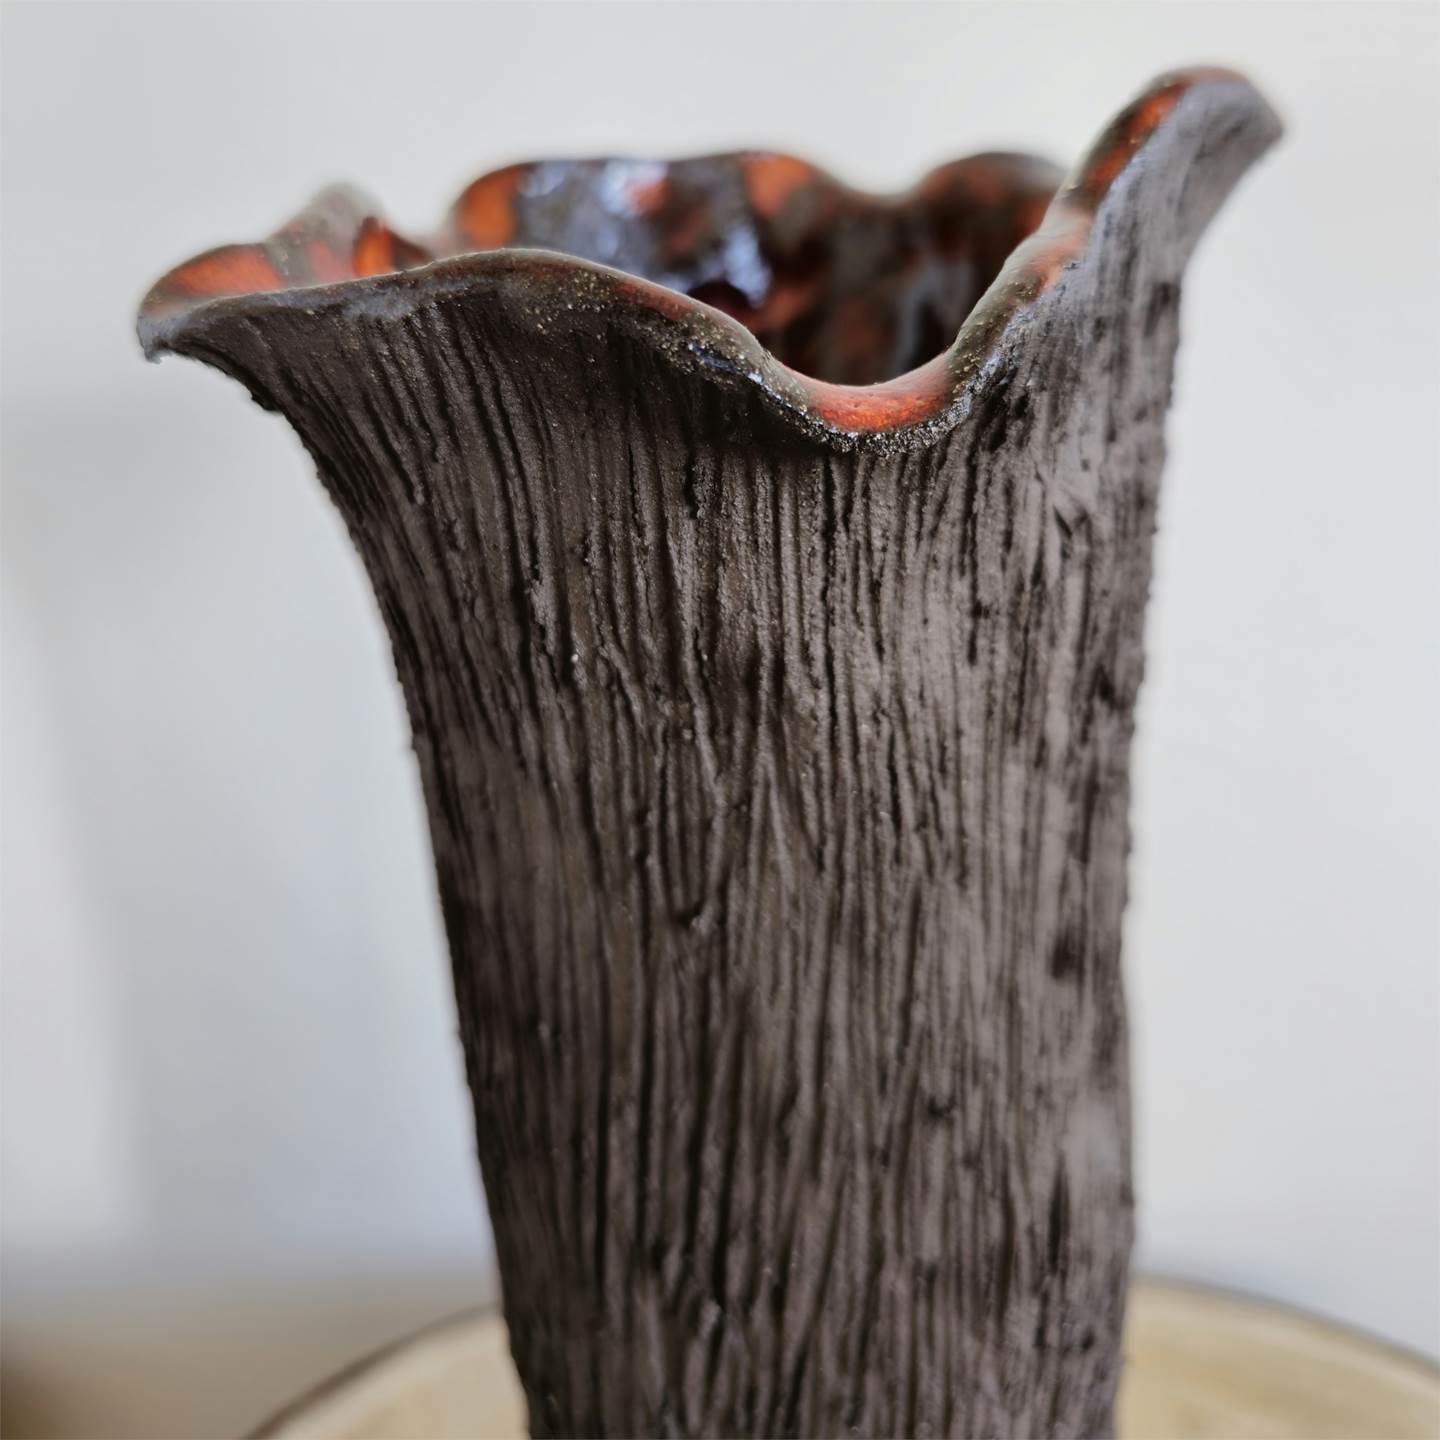 Vase V (Flower), Escultura Cerâmica Figura Humana original por Ana Sousa Santos